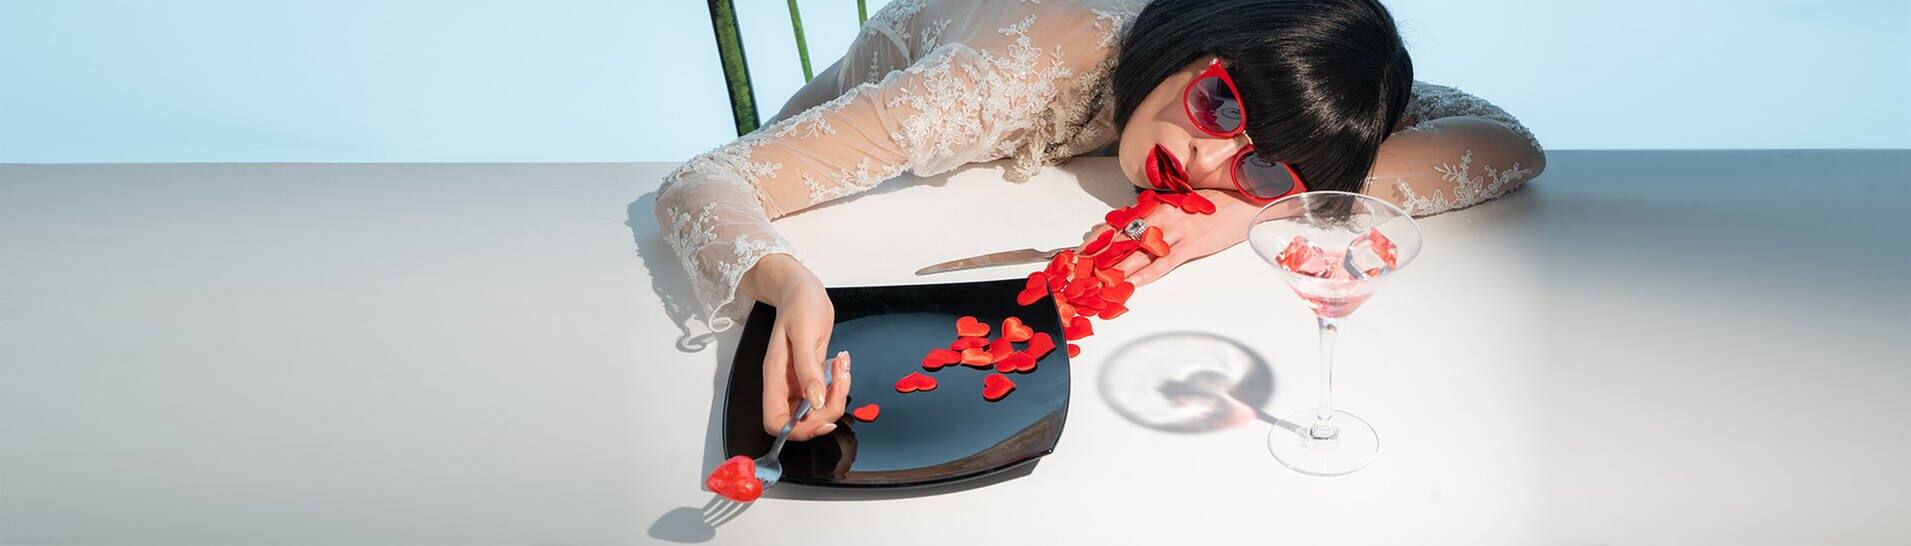 Frau liegt auf dem Esstisch – erstickt an Herzen, die ihr aus dem Mund quellen (Foto: Adobe Stock/razoomanetu)